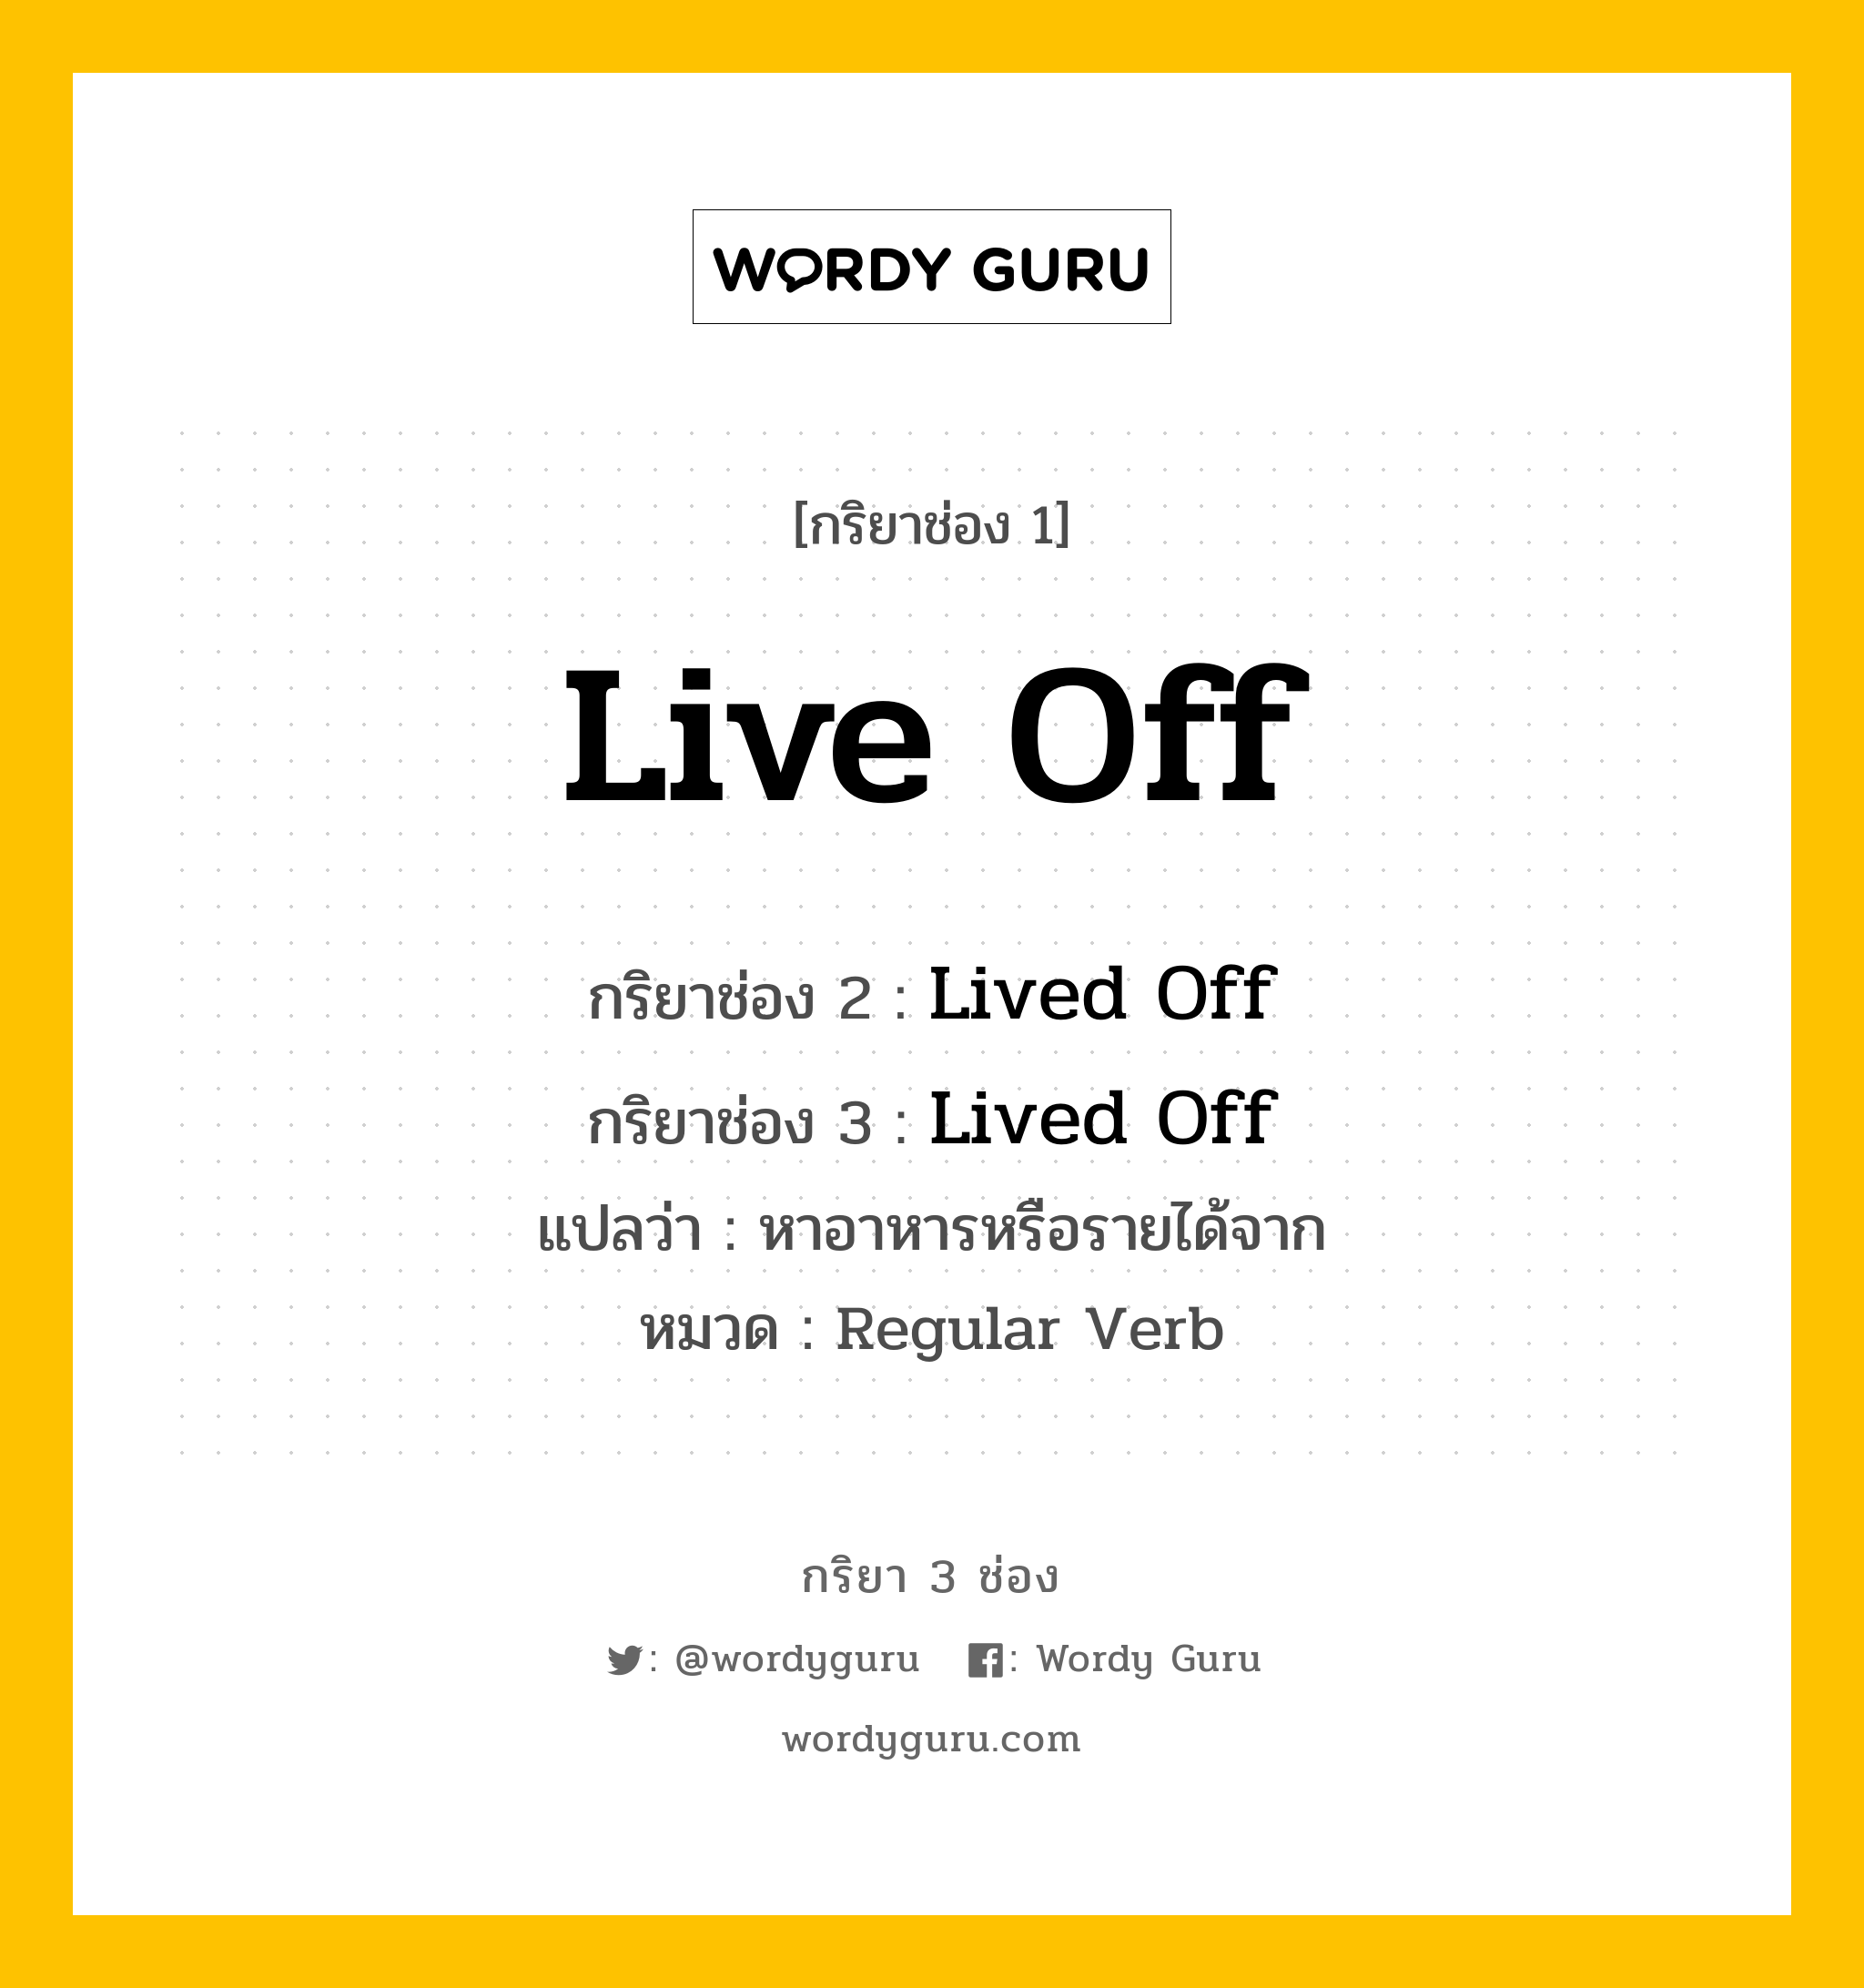 กริยา 3 ช่อง: Live Off ช่อง 2 Live Off ช่อง 3 คืออะไร, กริยาช่อง 1 Live Off กริยาช่อง 2 Lived Off กริยาช่อง 3 Lived Off แปลว่า หาอาหารหรือรายได้จาก หมวด Regular Verb หมวด Regular Verb